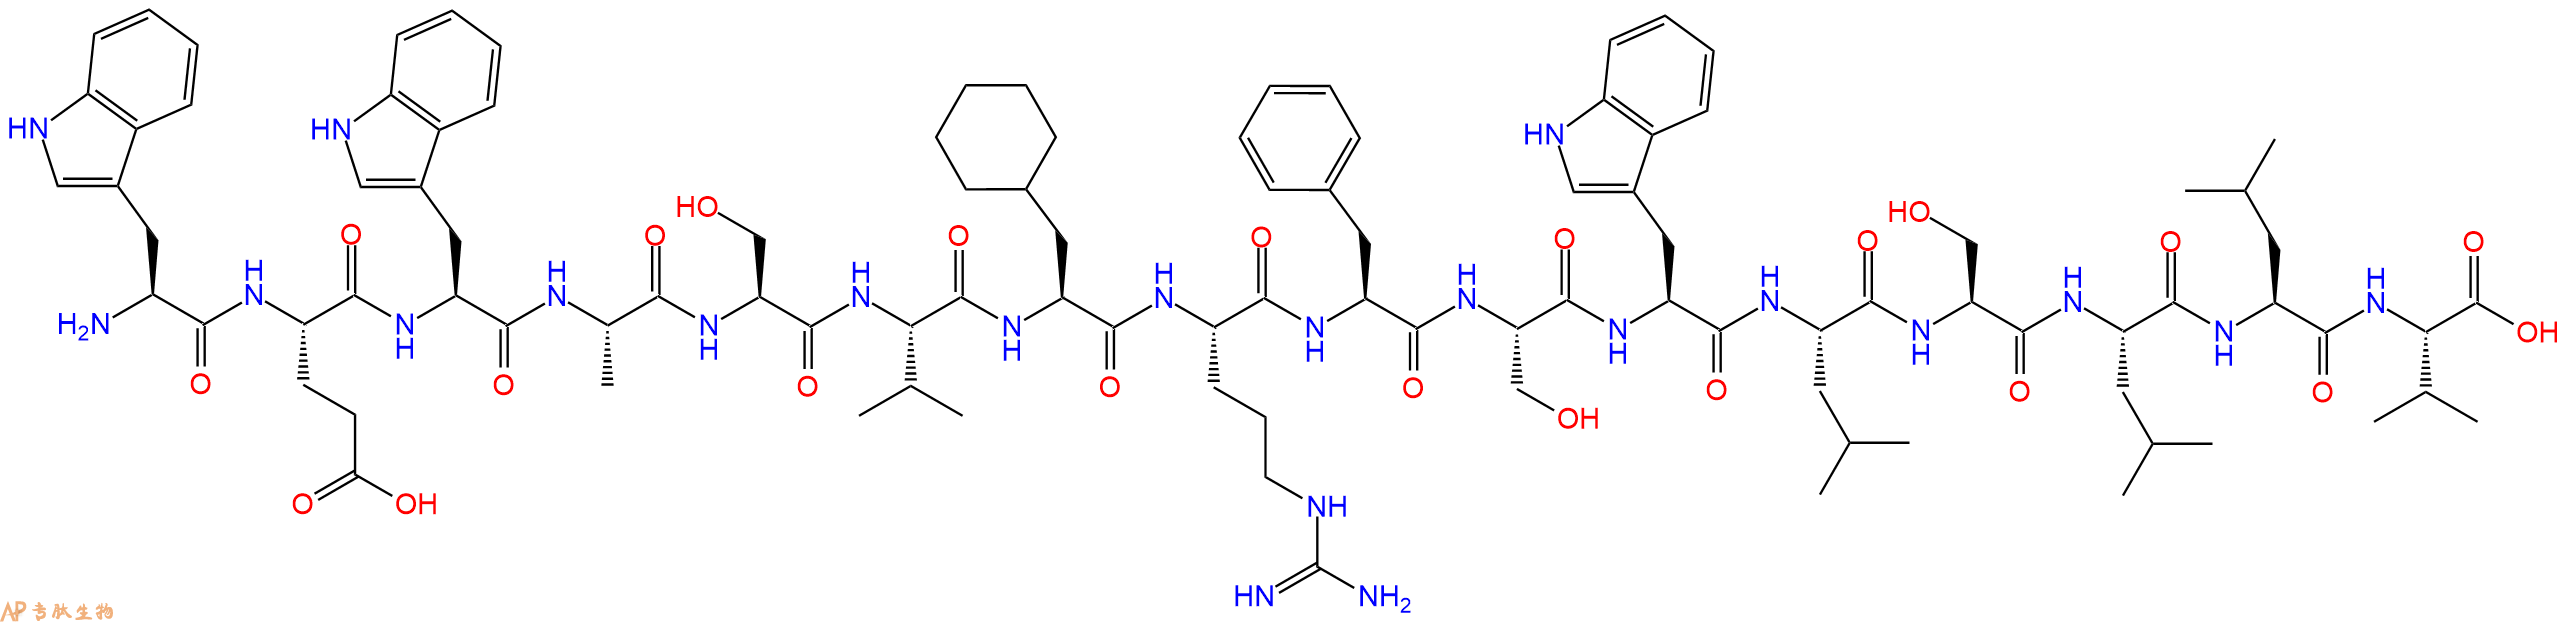 专肽生物产品H2N-Trp-Glu-Trp-Ala-Ser-Val-Cha-Arg-Phe-Ser-Trp-Leu-Ser-Leu-Leu-Val-COOH